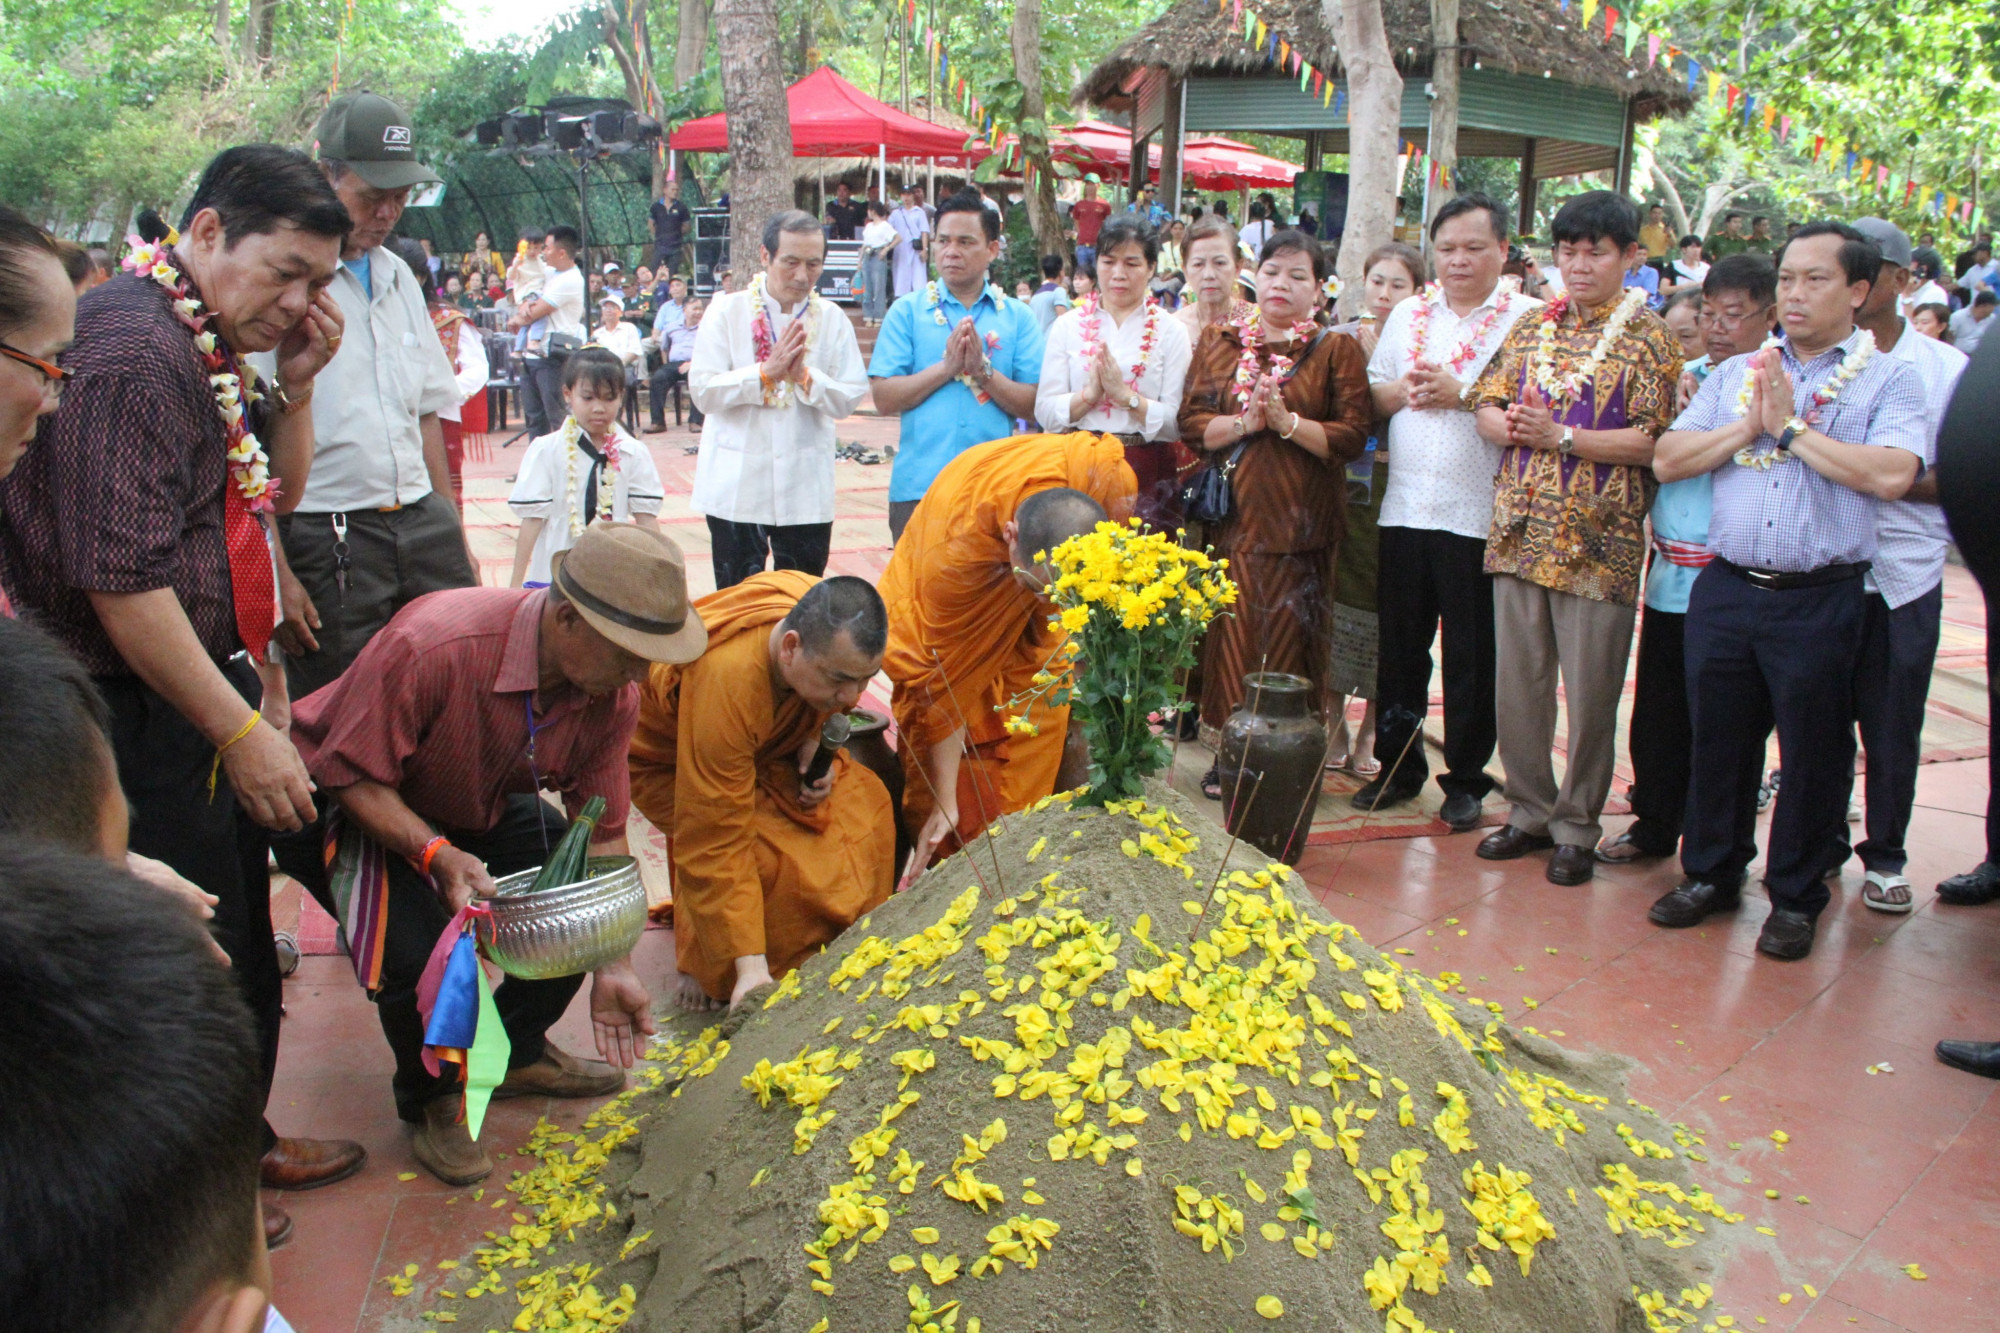 tại Tết Bunpimay, mọi người cùng hành lễ đắp tháp cát. Đây là một trong những phong tục lâu đời của các bộ tộc Lào để cầu chúc sức khỏe, bình an. 